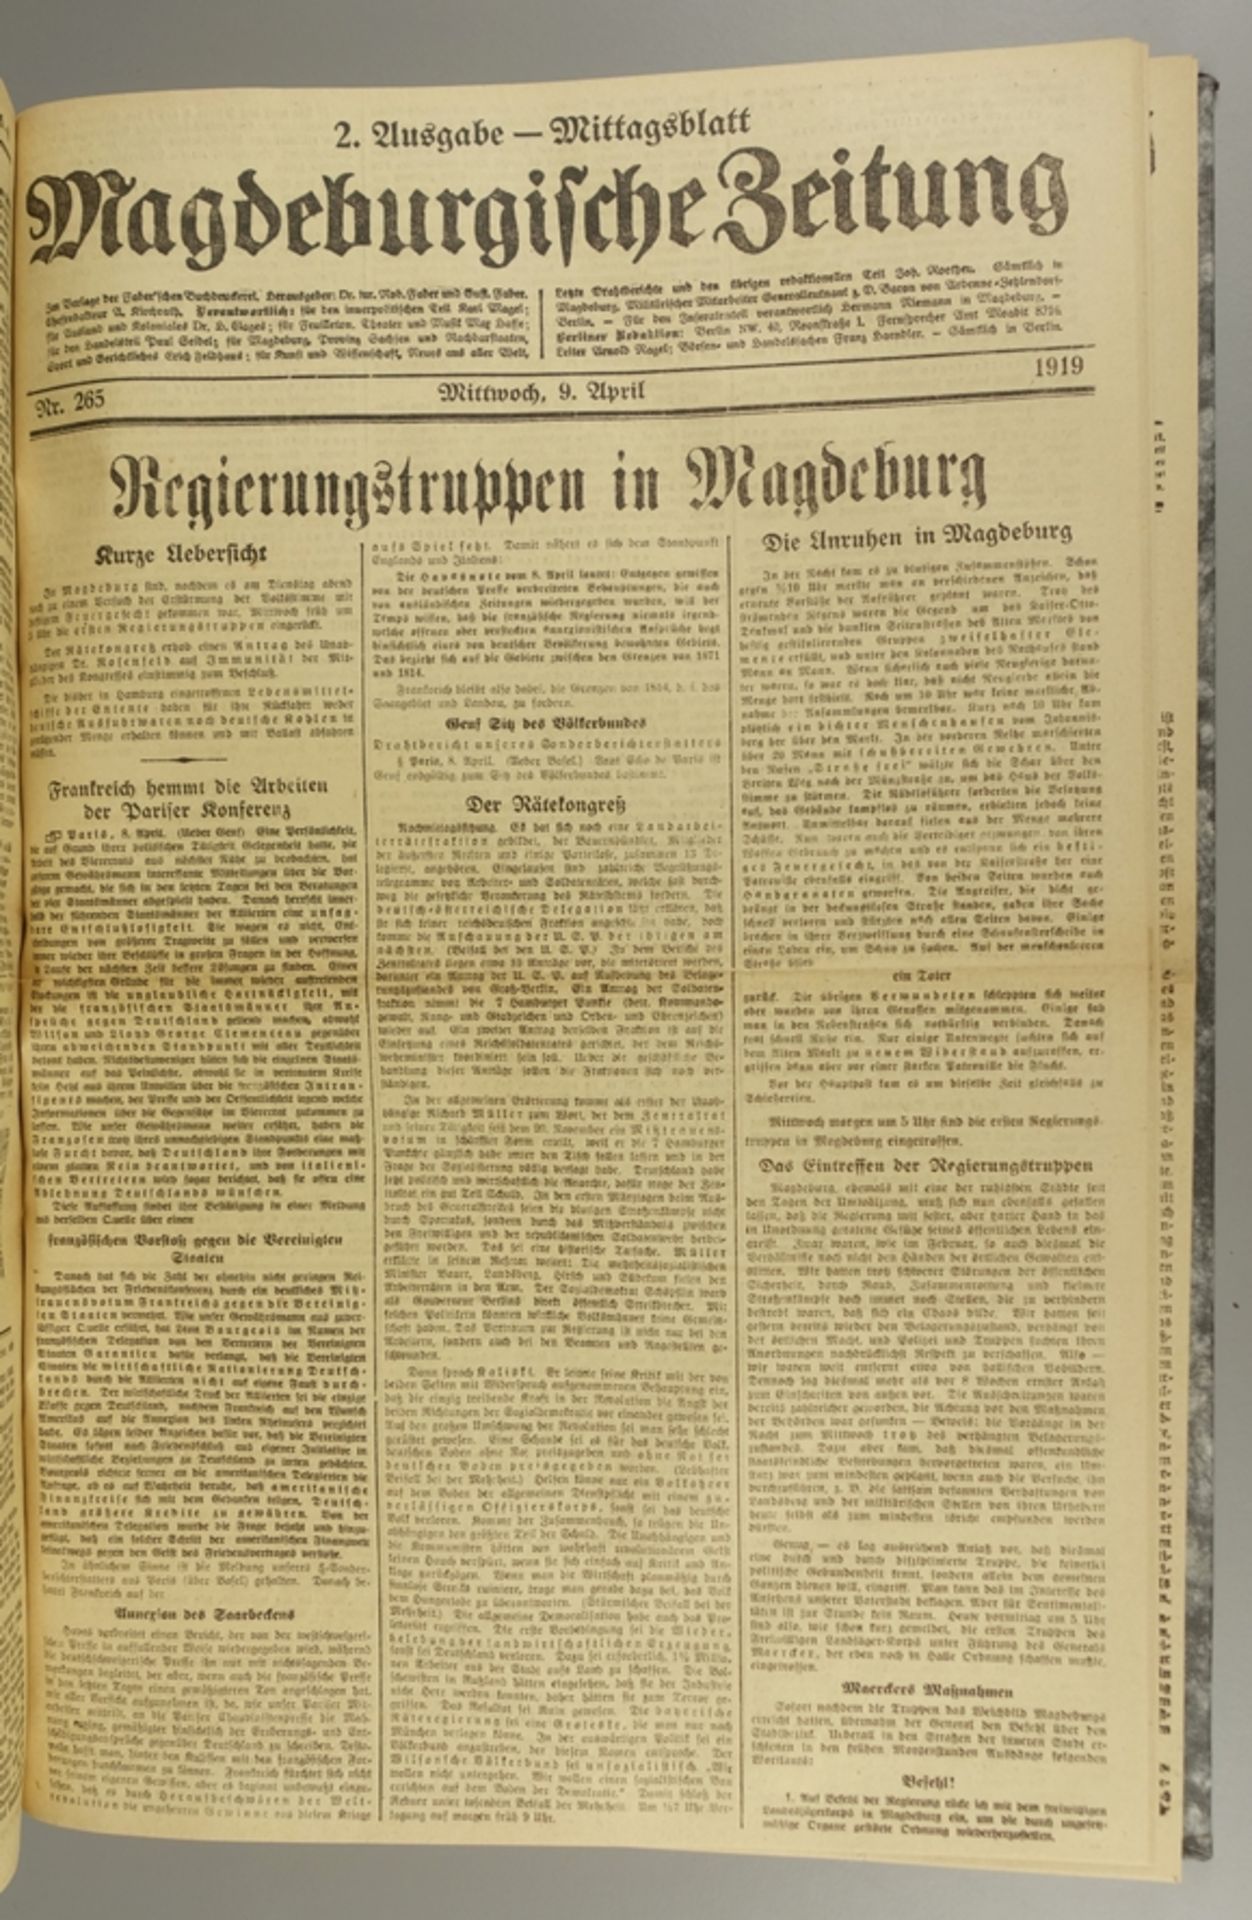 Magdeburger Zeitung, April 1919, gebundene Ausgabe